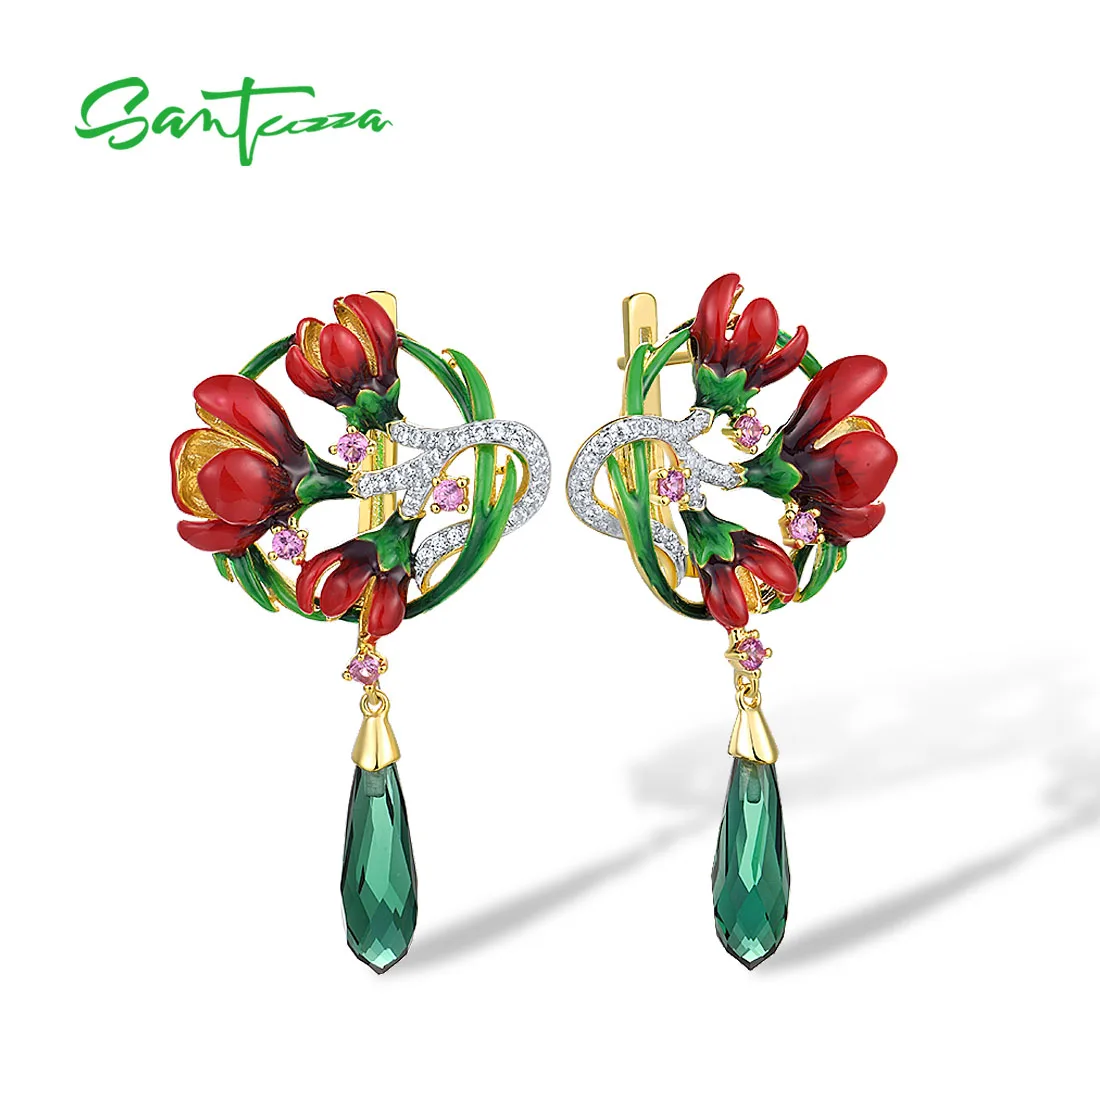 SANTUZZA 925 Sterling Silver Drop Earrings For Women Pink Green Stones White CZ Red Enamel Flower Delicate Fine Jewelry Handmade